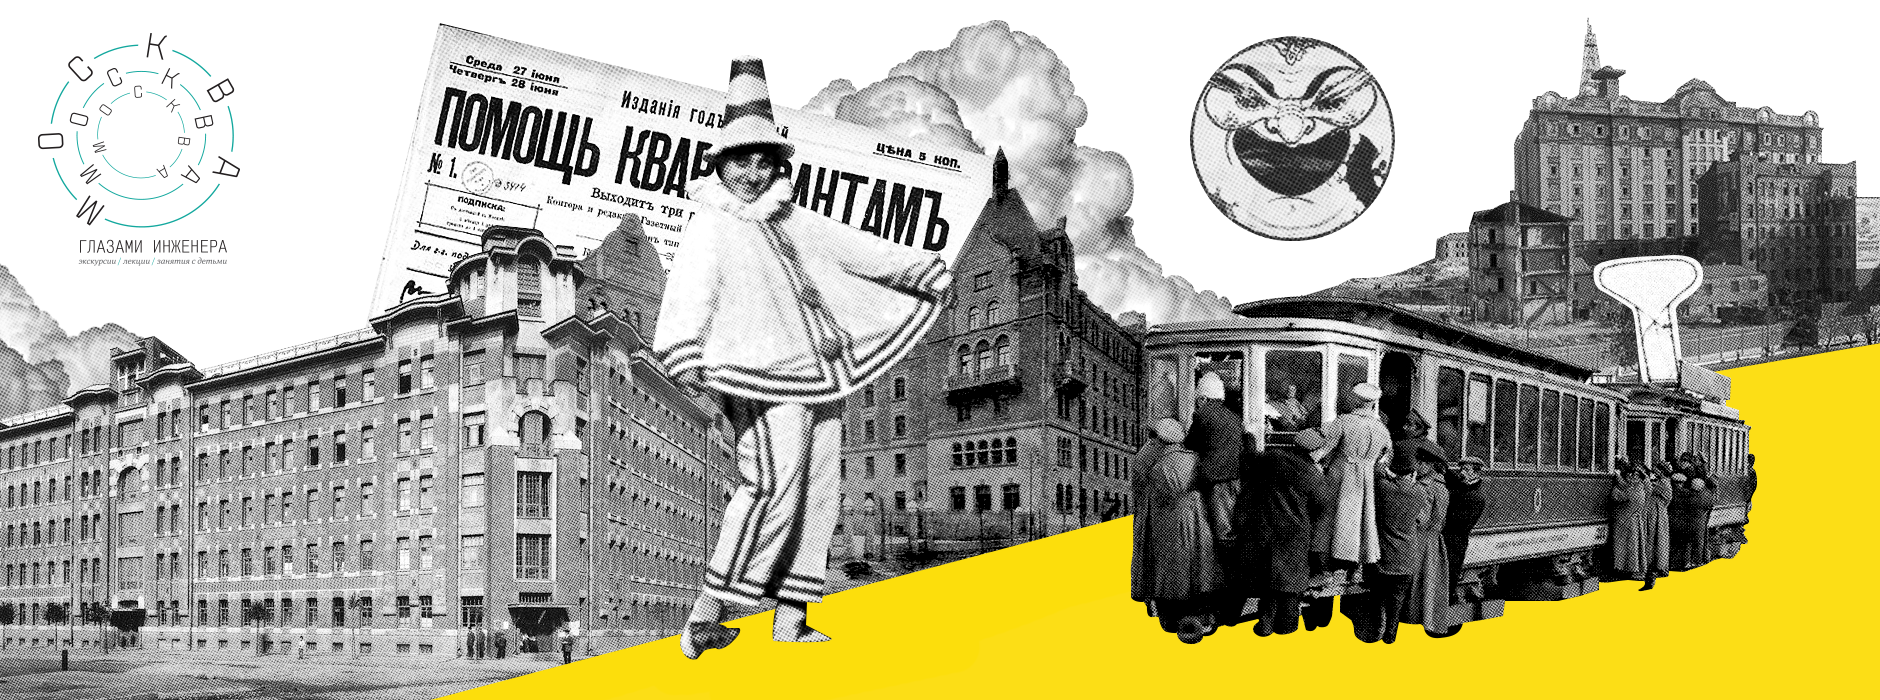 Жильё для рабочих и небоскрёб для обеспеченных холостяков — как решали квартирный вопрос в России до революции